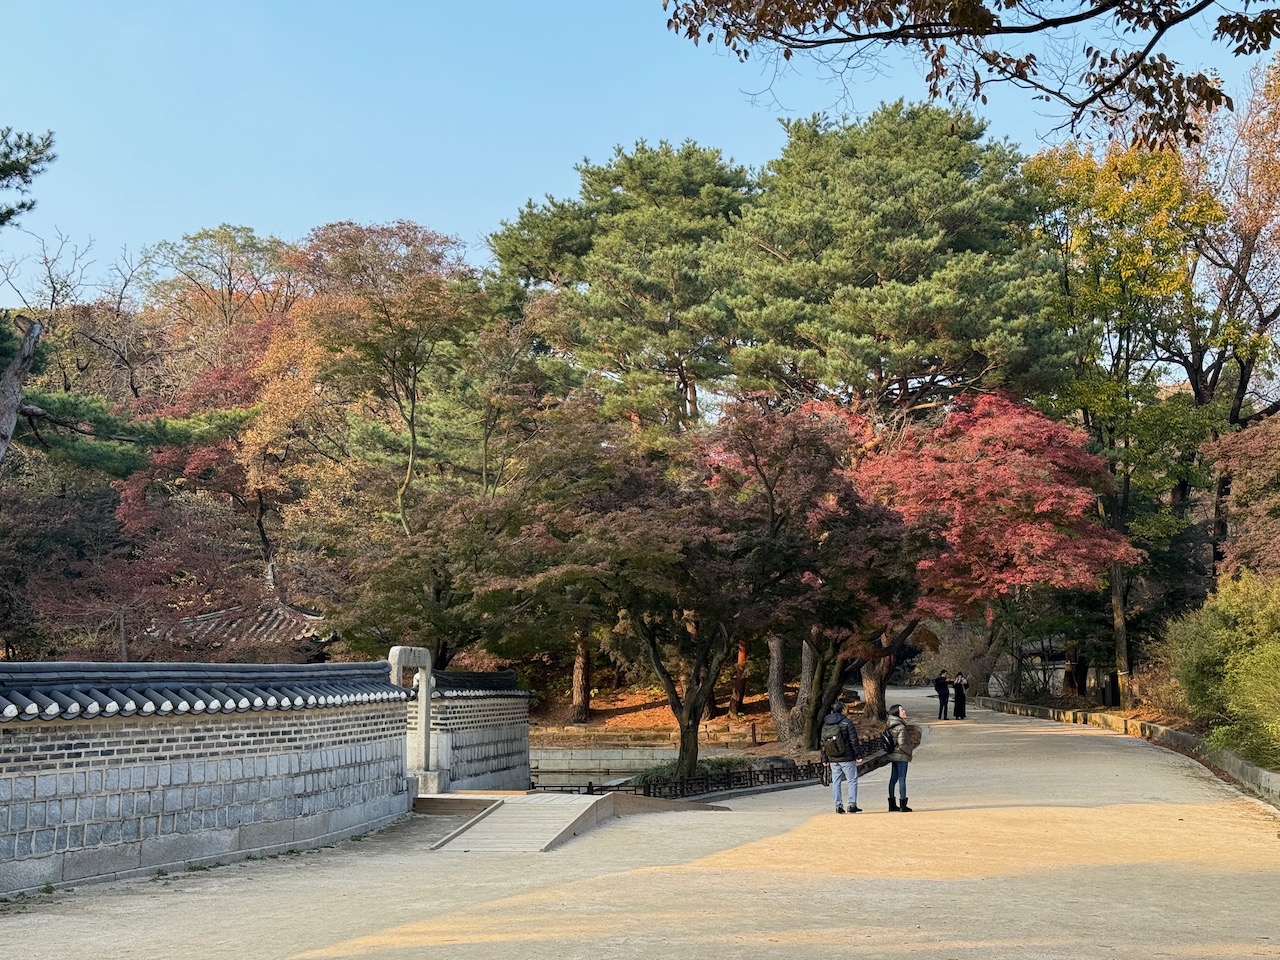 Inside the secret garden of Changdeokgung